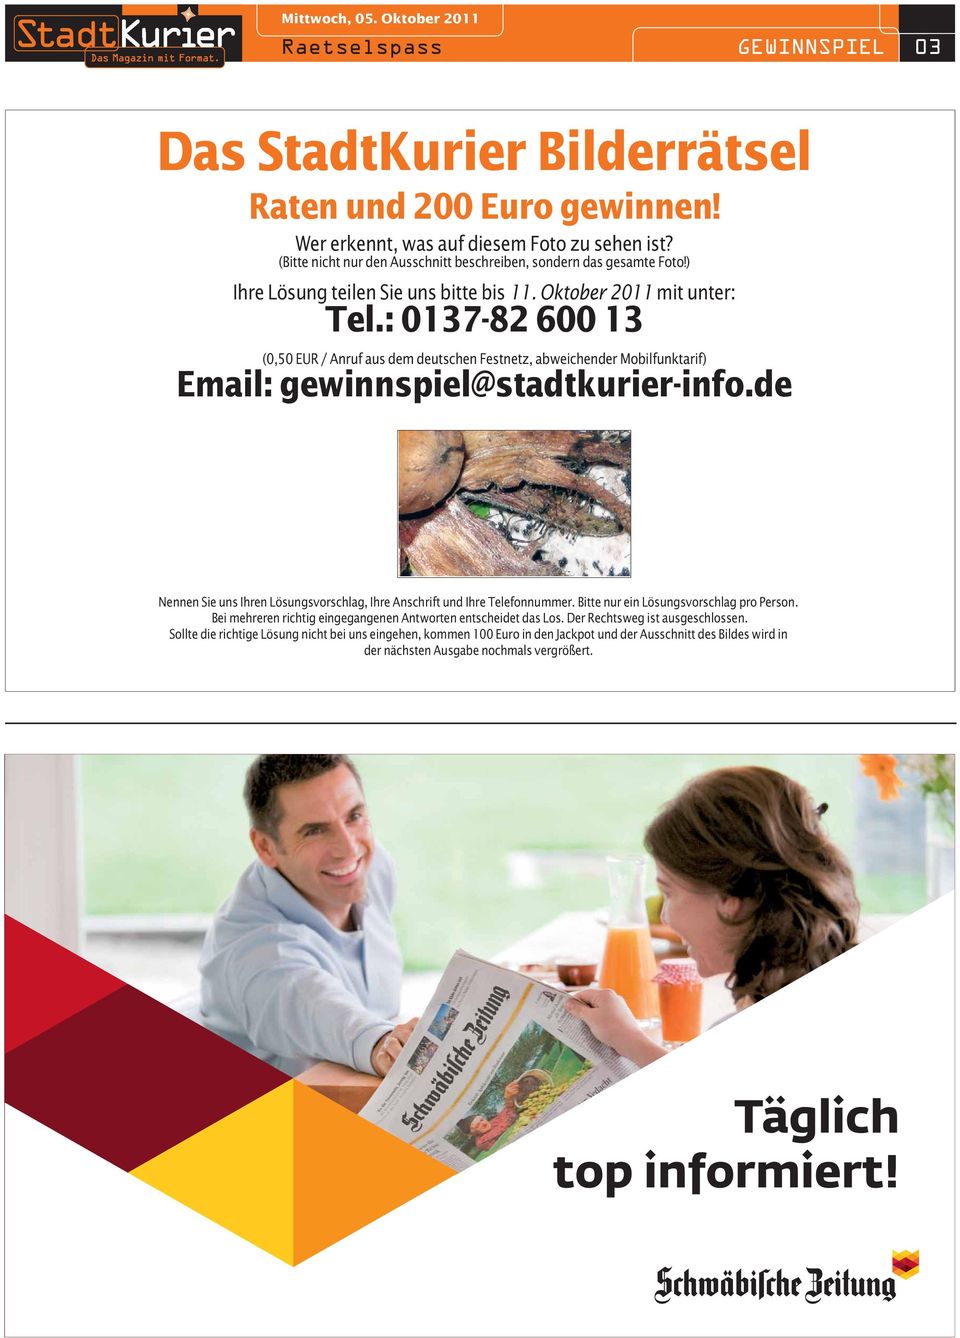 : 0137-82 600 13 (0,50 EUR / Anruf aus dem deutschen Festnetz, abweichender Mobilfunktarif) Email: gewinnspiel@stadtkurier-info.